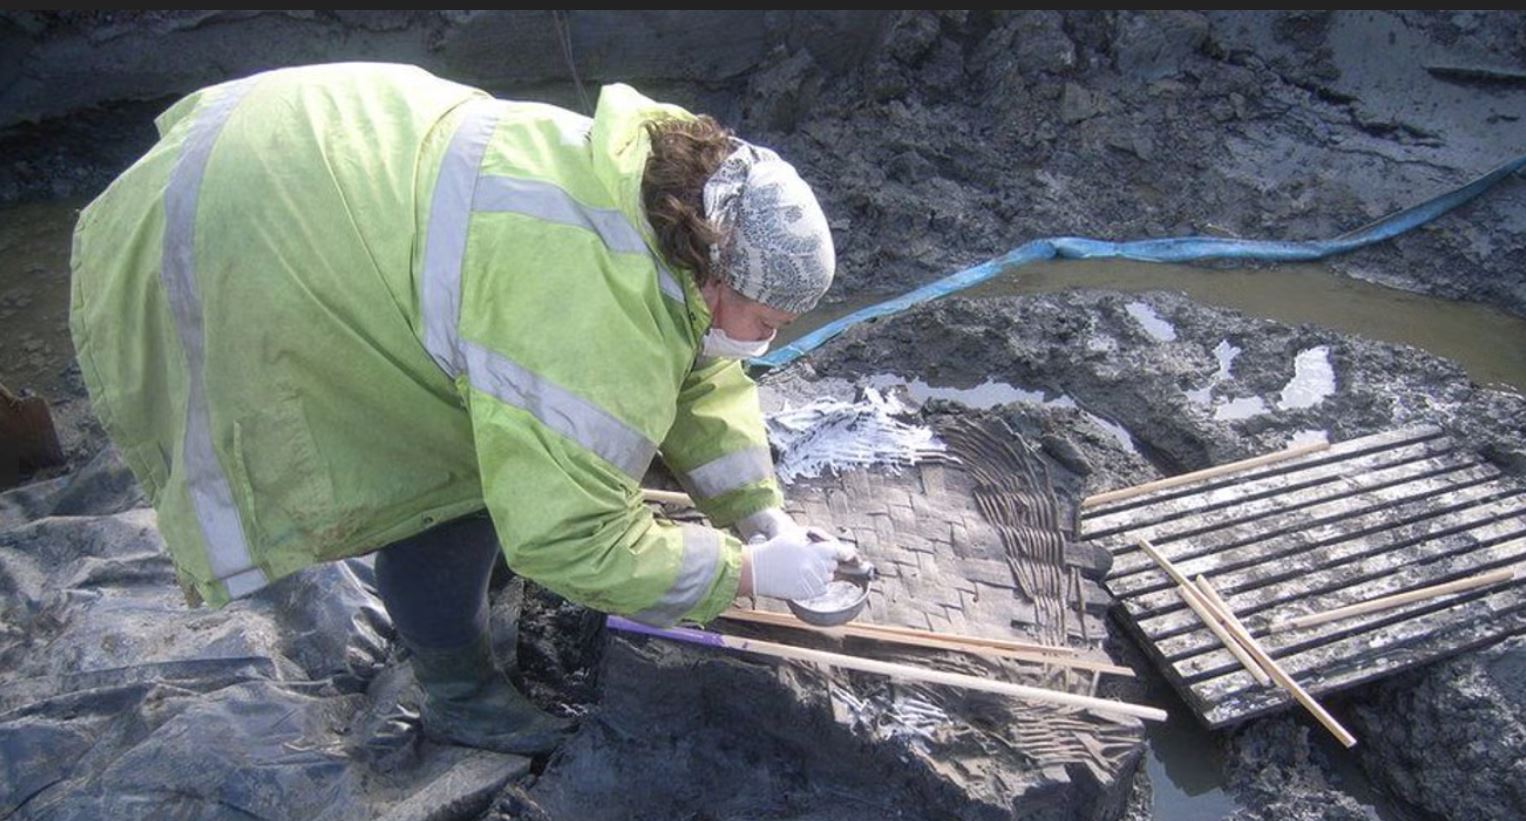 Οι αρχαιολόγοι έκαναν την ανακάλυψη κατά τη διάρκεια μιας ανασκαφής που πραγματοποιήθηκε μεταξύ 2007 και 2016. 